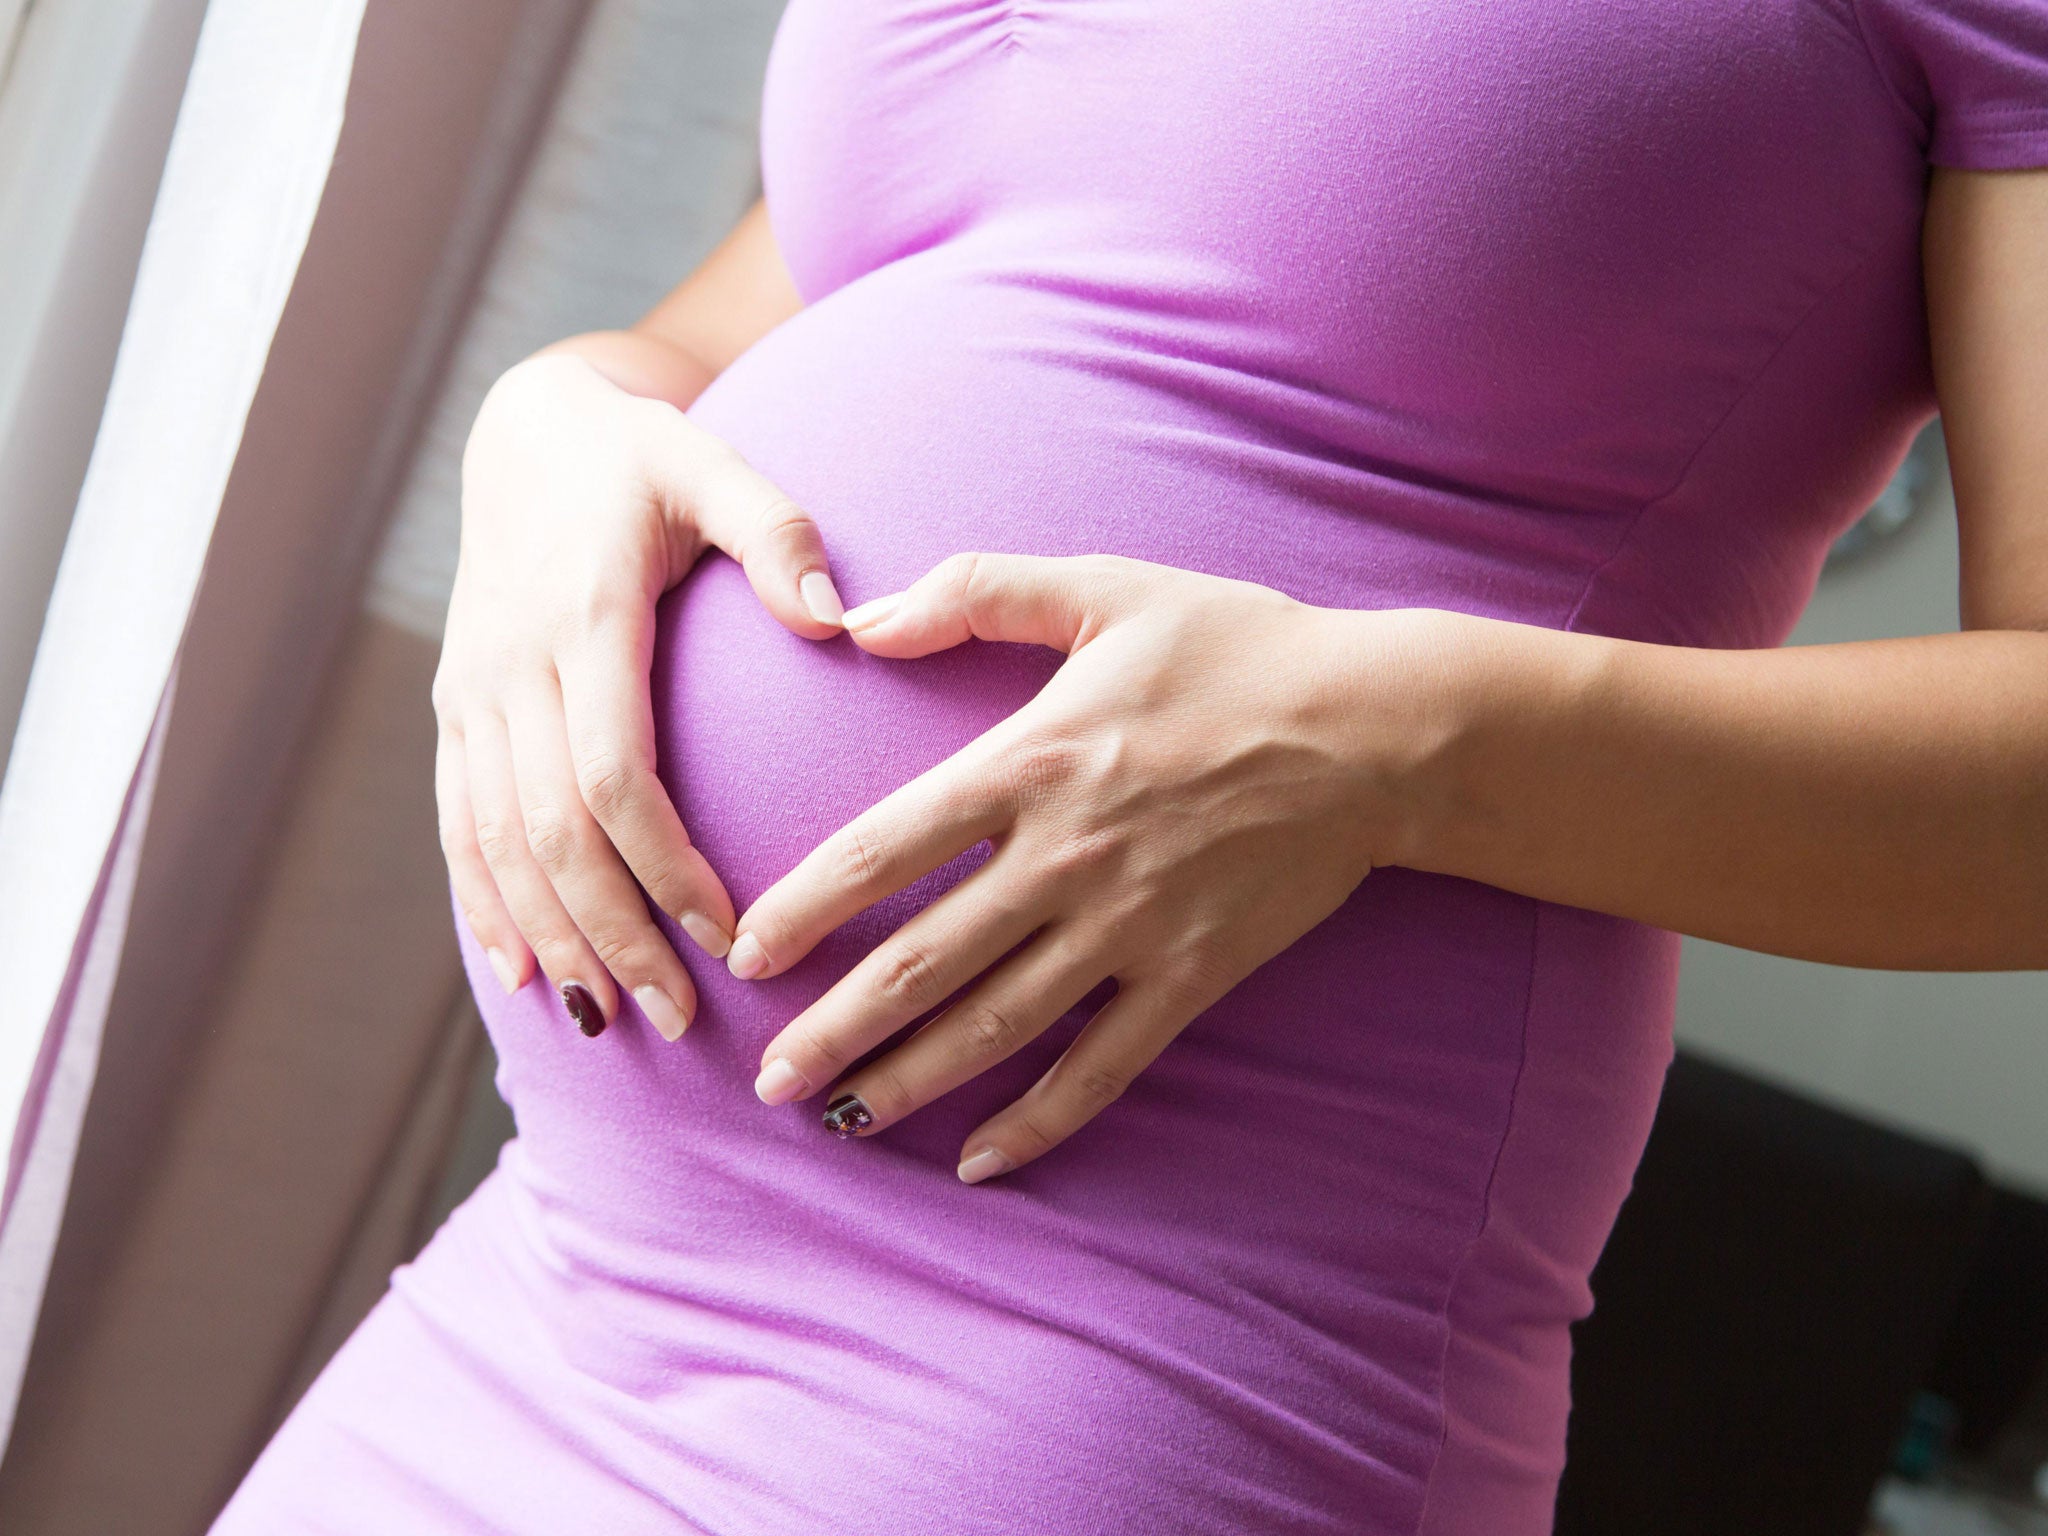 Después de contactar a su médico, las mujeres que desarrollan varicela durante el embarazo deben ser derivadas a un especialista en medicina fetal.